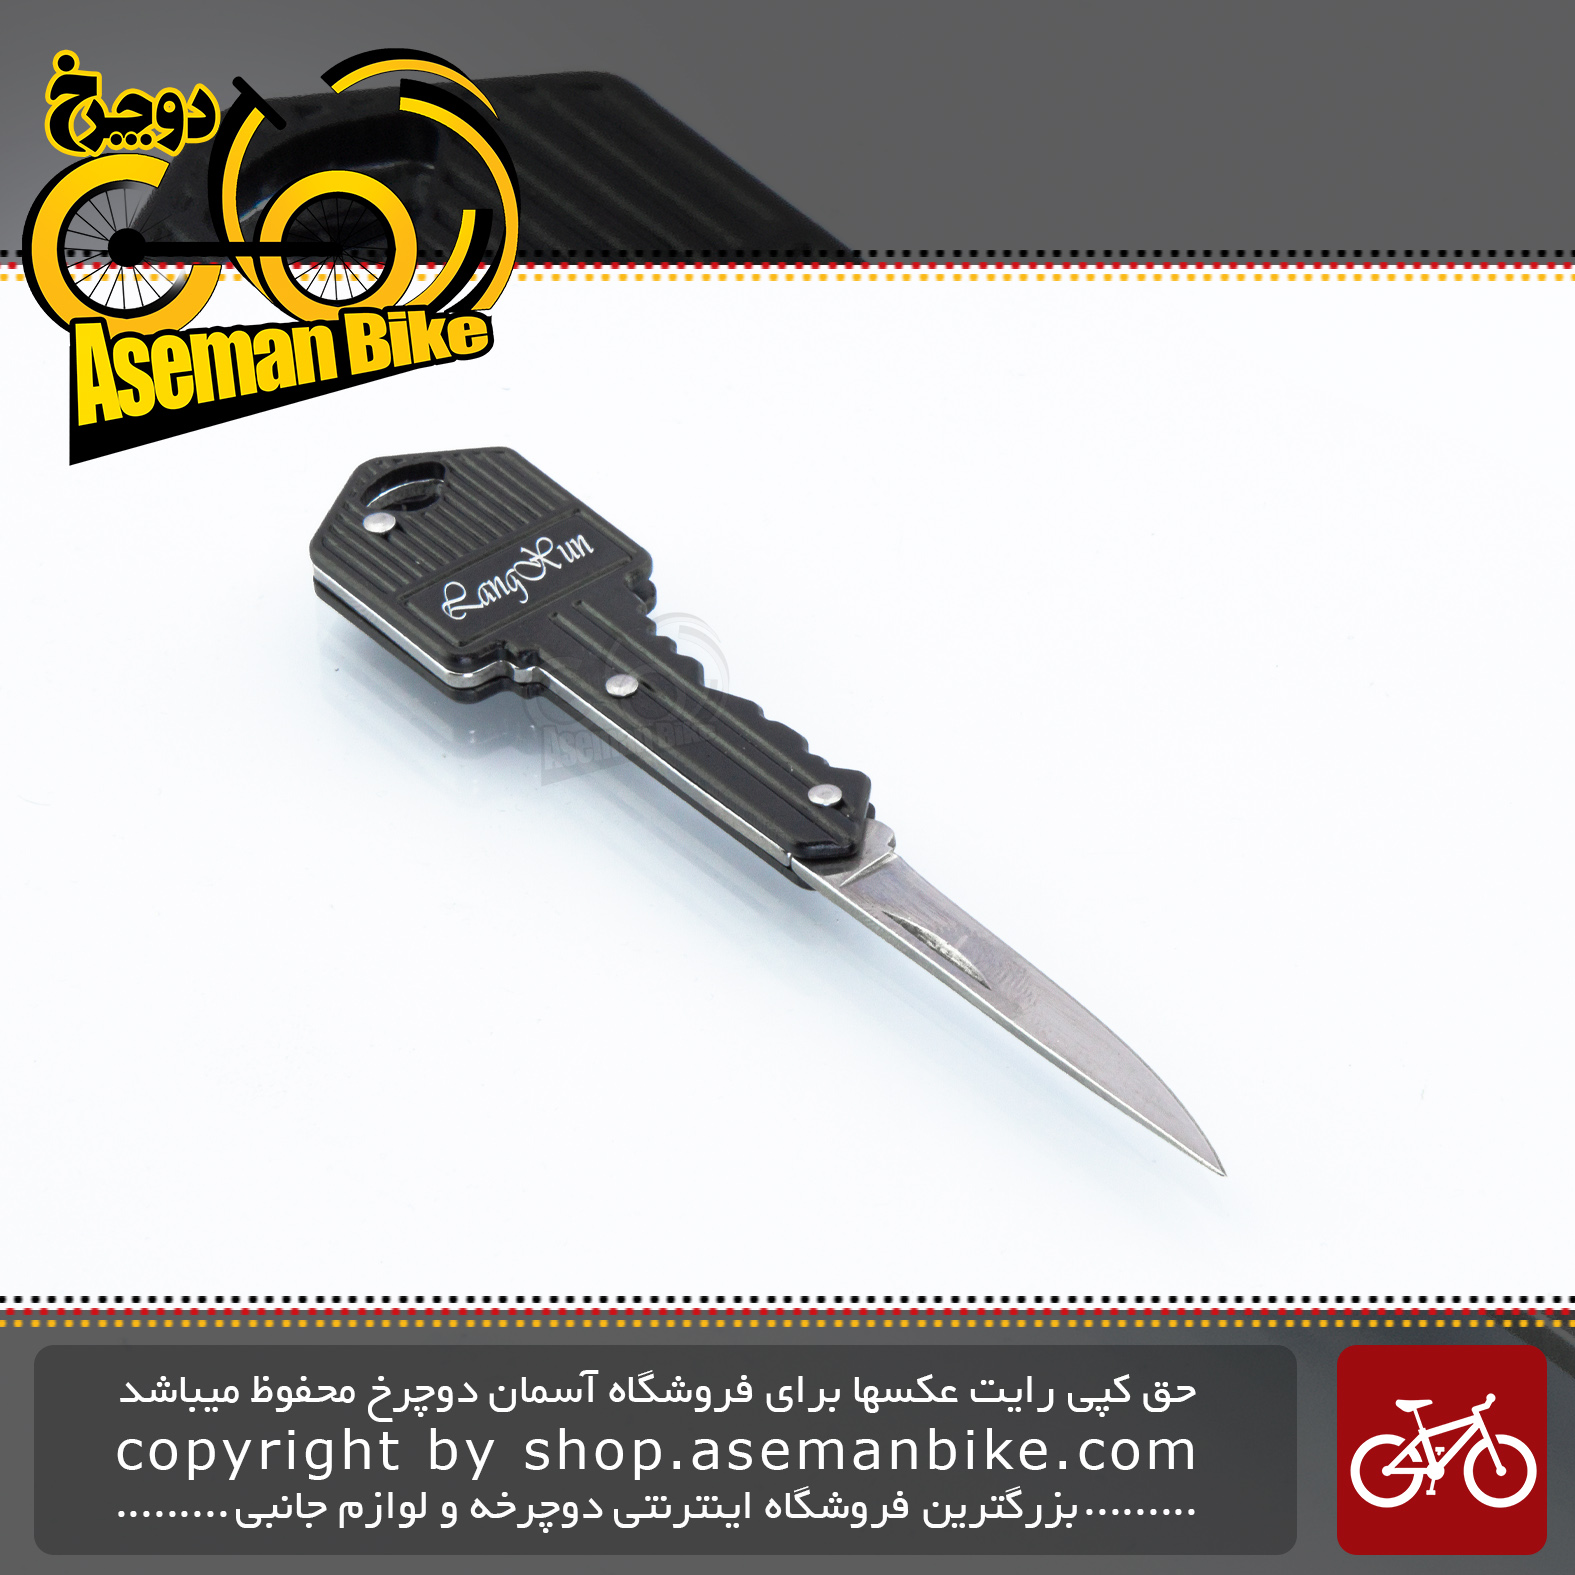 ابزار کاربردی کمپینگ چاقو کلیدی تاشو ام تول مدل 1011 مشکی M-Tool Multi Mini Tool Knife Key 1011 Black